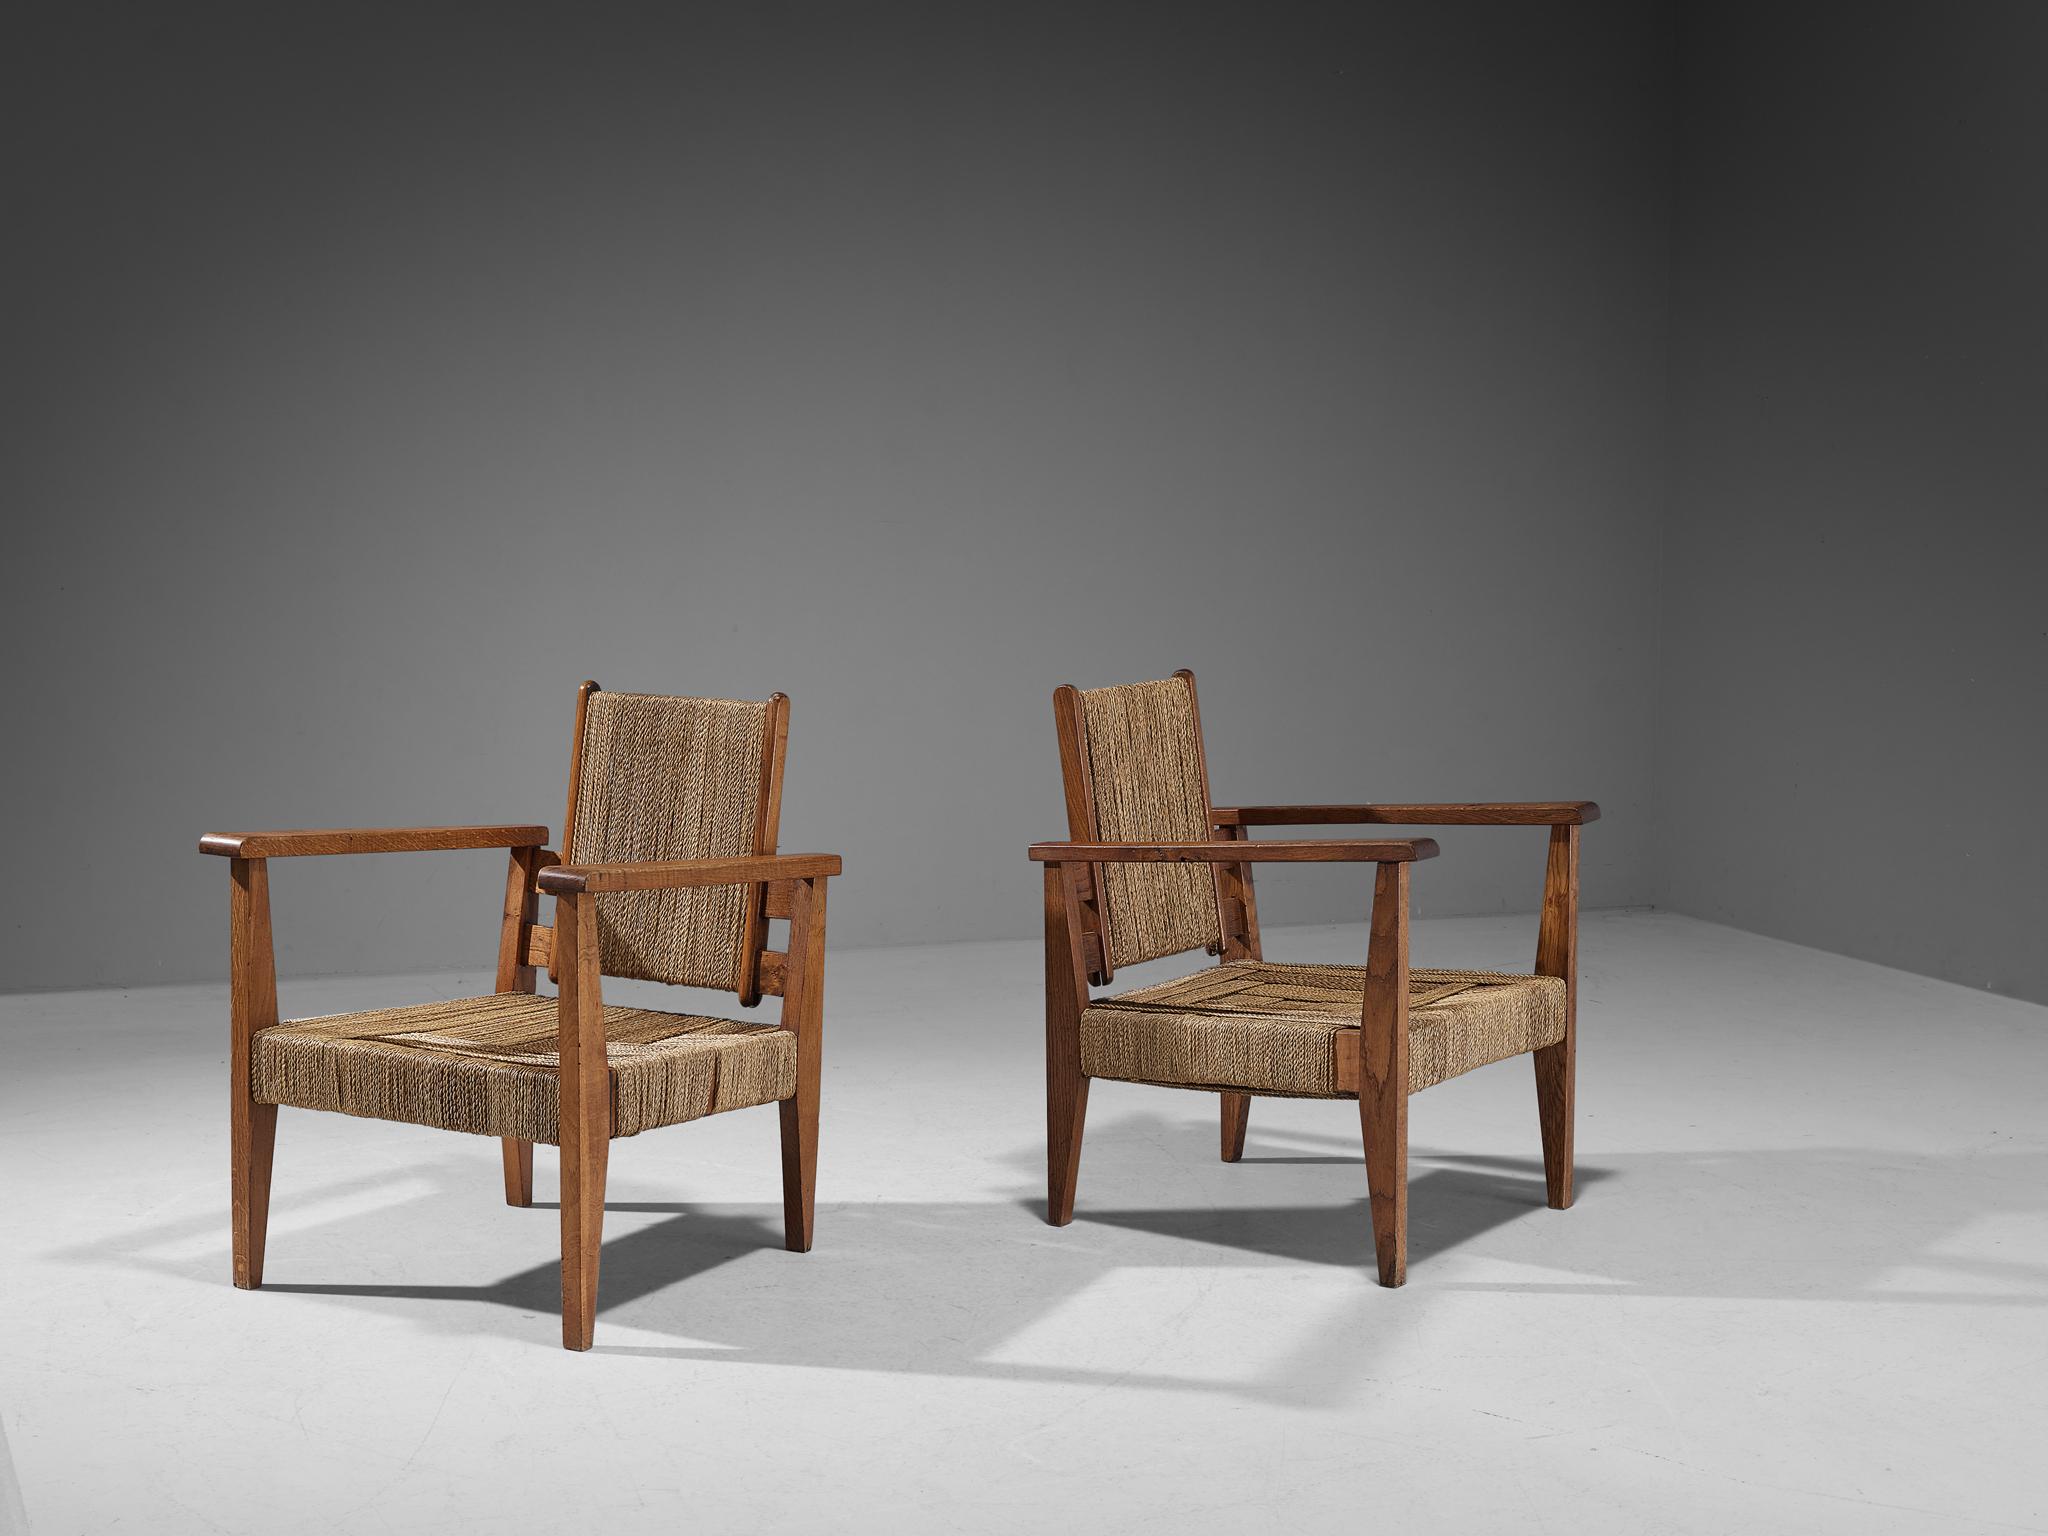 Victor Courtray, paire de fauteuils, paille, chêne, France, vers 1940

Cette rare paire de chaises de salon embrasse un caractère provincial évolué avec une grande qualité d'élégance. Le type de revêtement et la construction confèrent à la chaise un